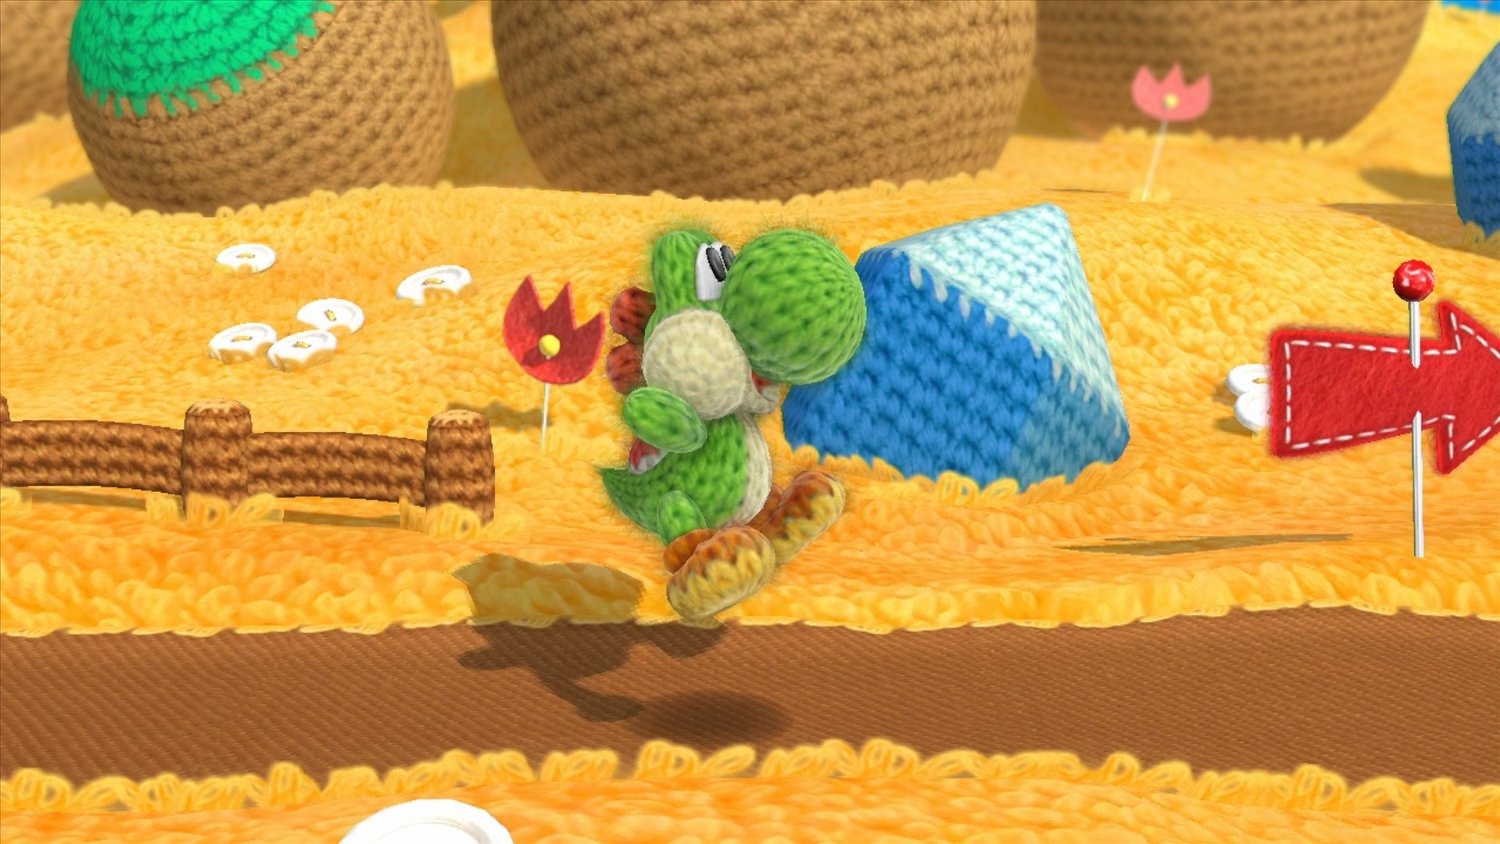 Yoshi’s Woolly World Wii U Review Screenshot 1